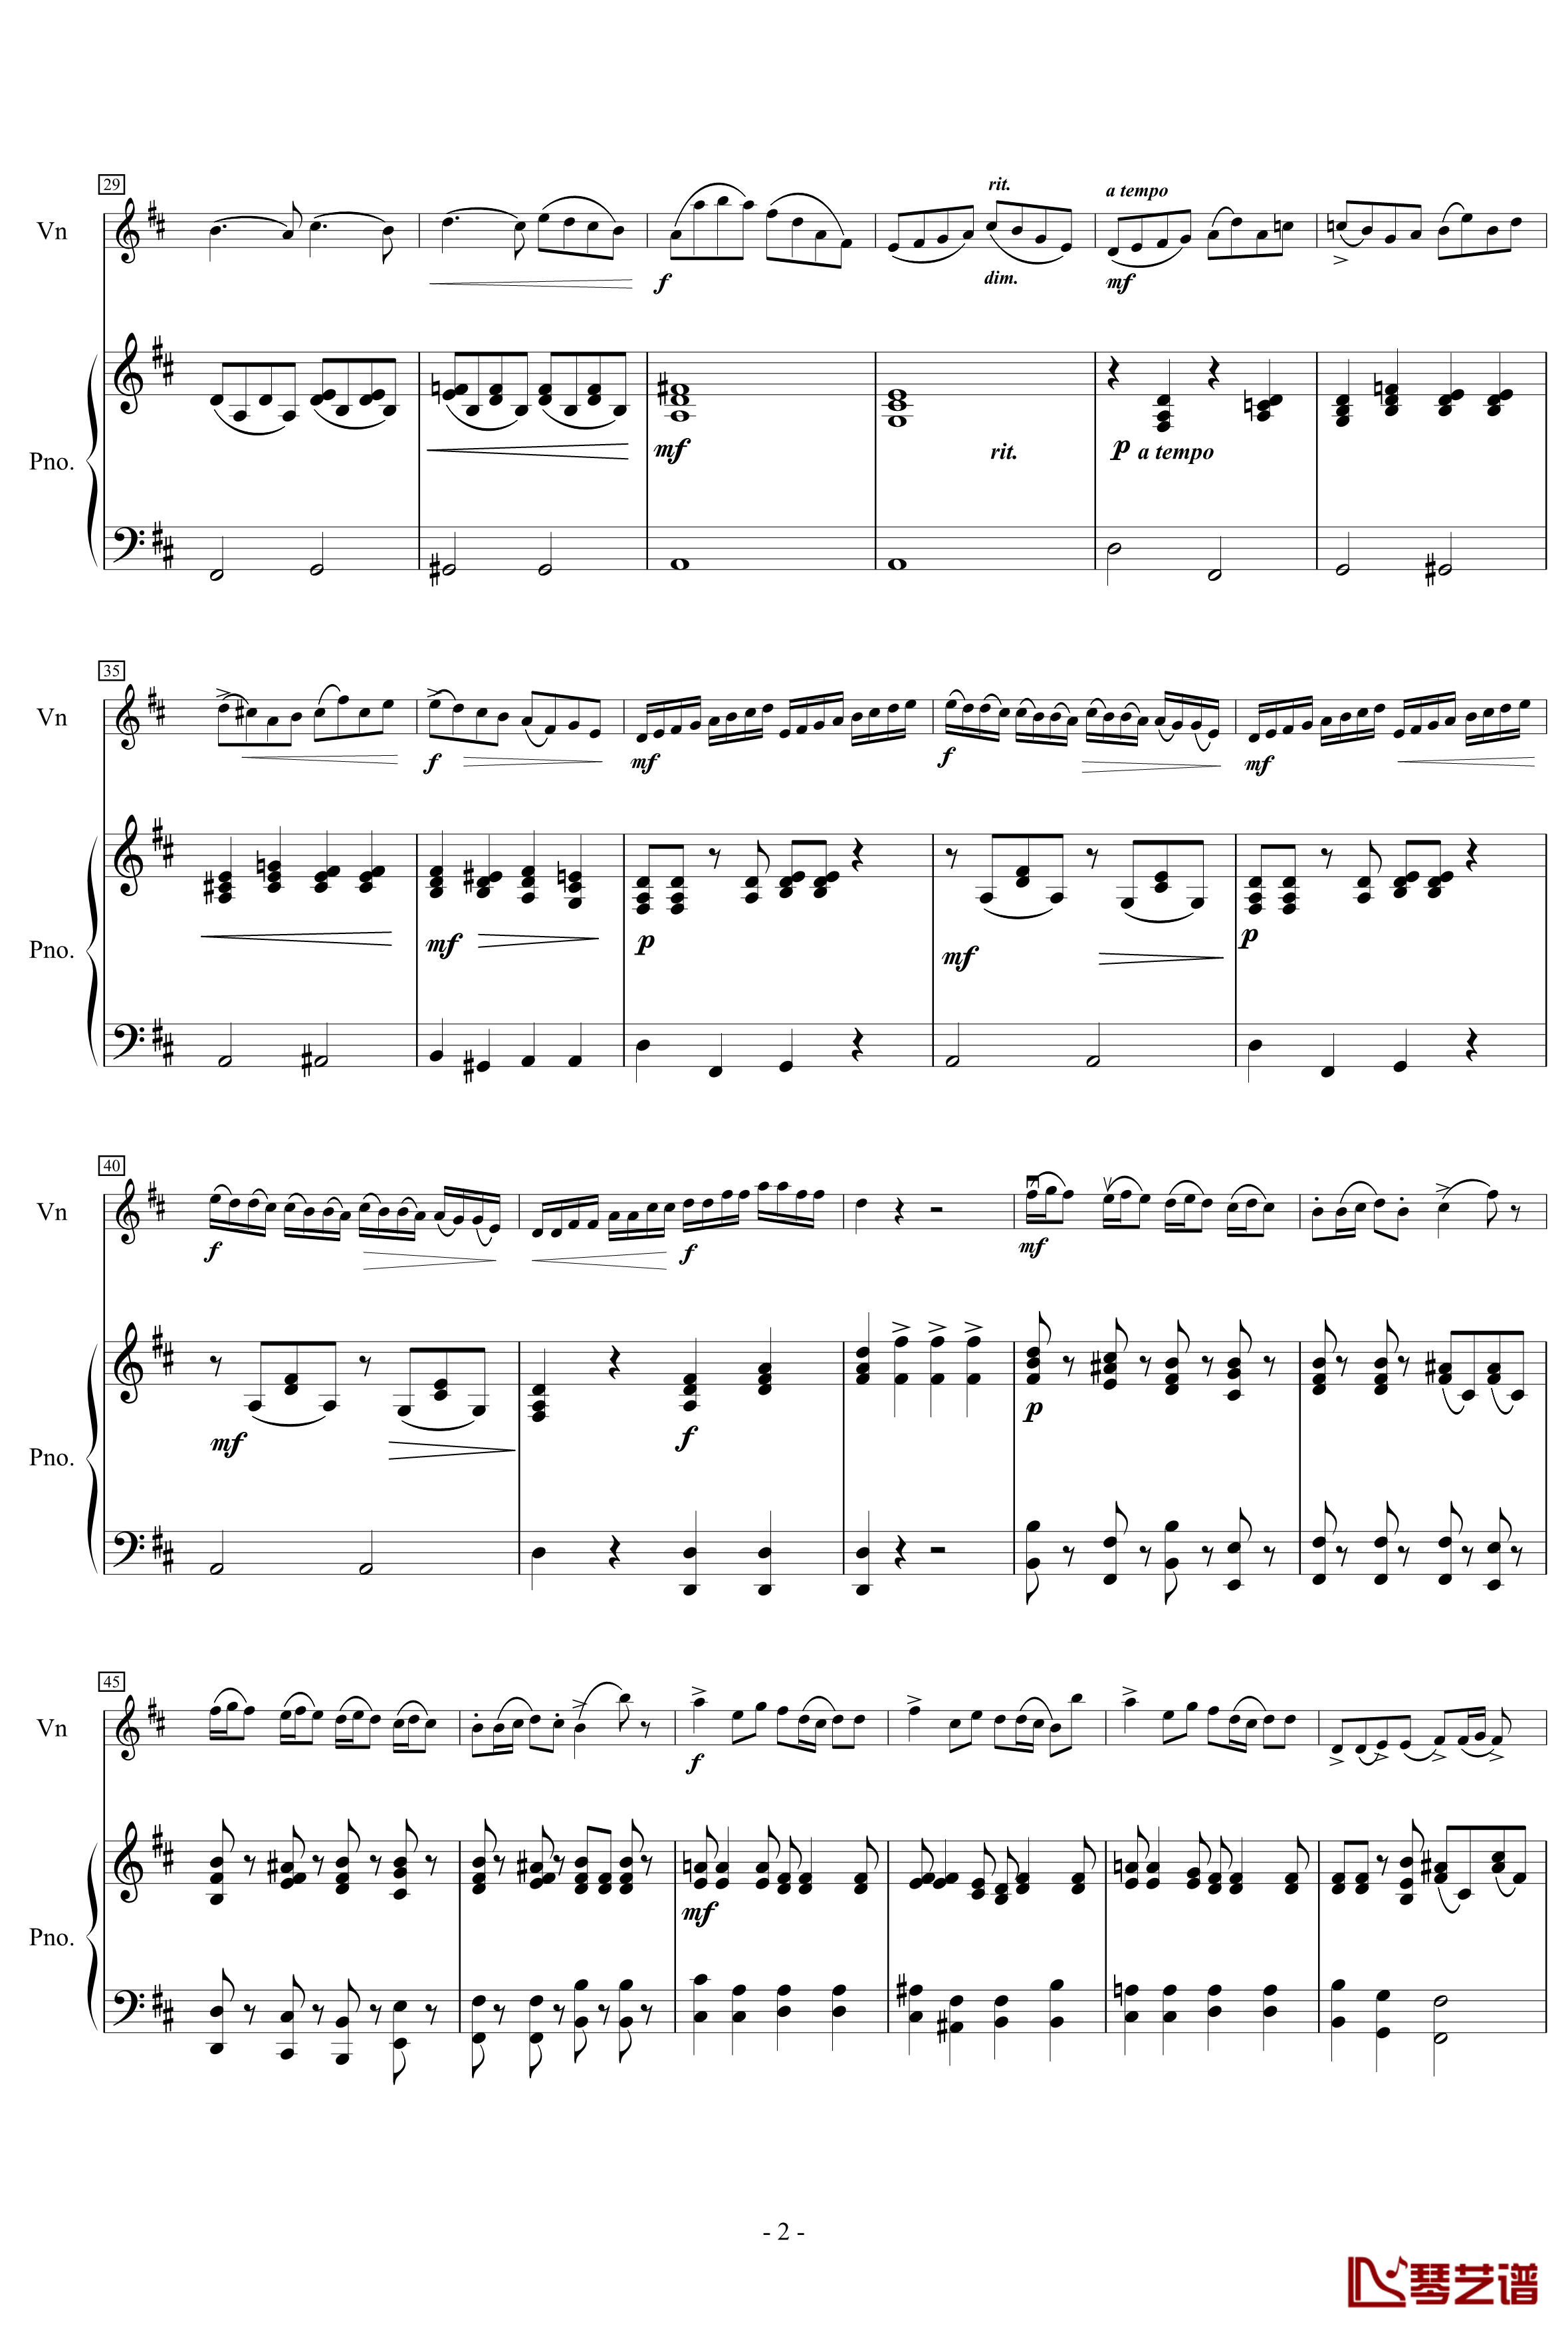 Concerto for Violin in B minor钢琴谱-奧斯卡·雷丁2